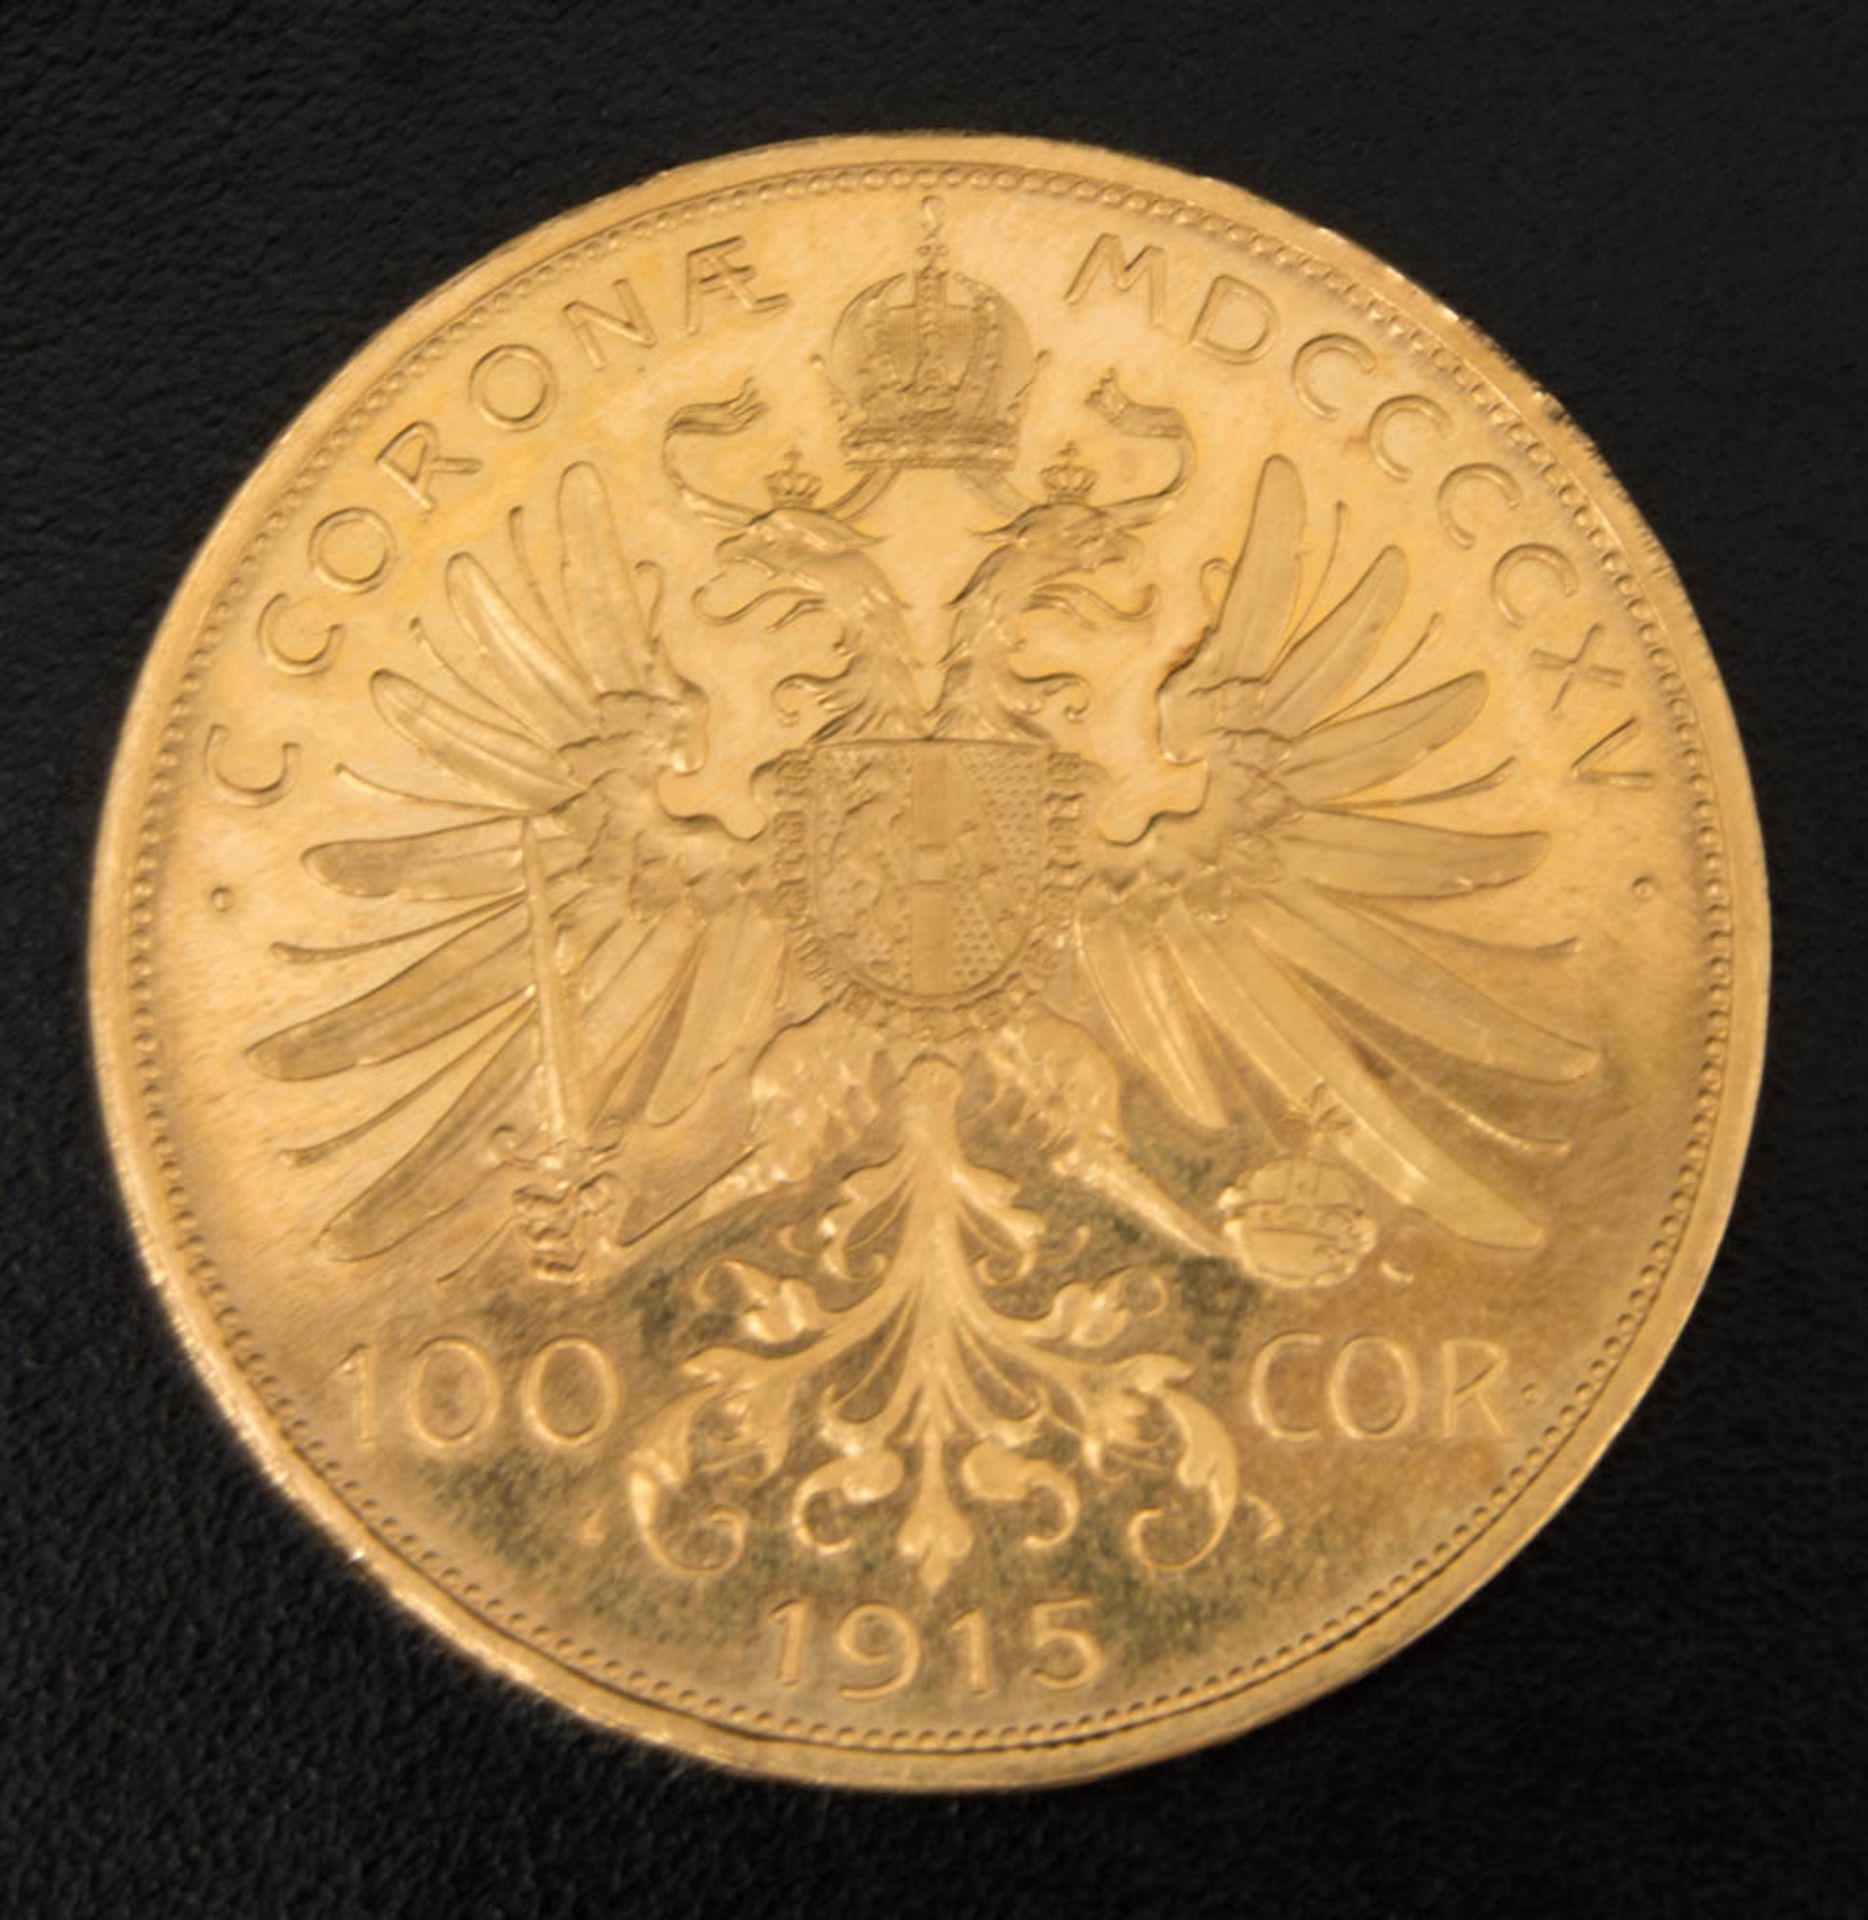 Franz Josef I. 100 Corona Goldmünze 1915.Material: Gold.Gewicht: 33.80 g.Feingehalt: 900 % (